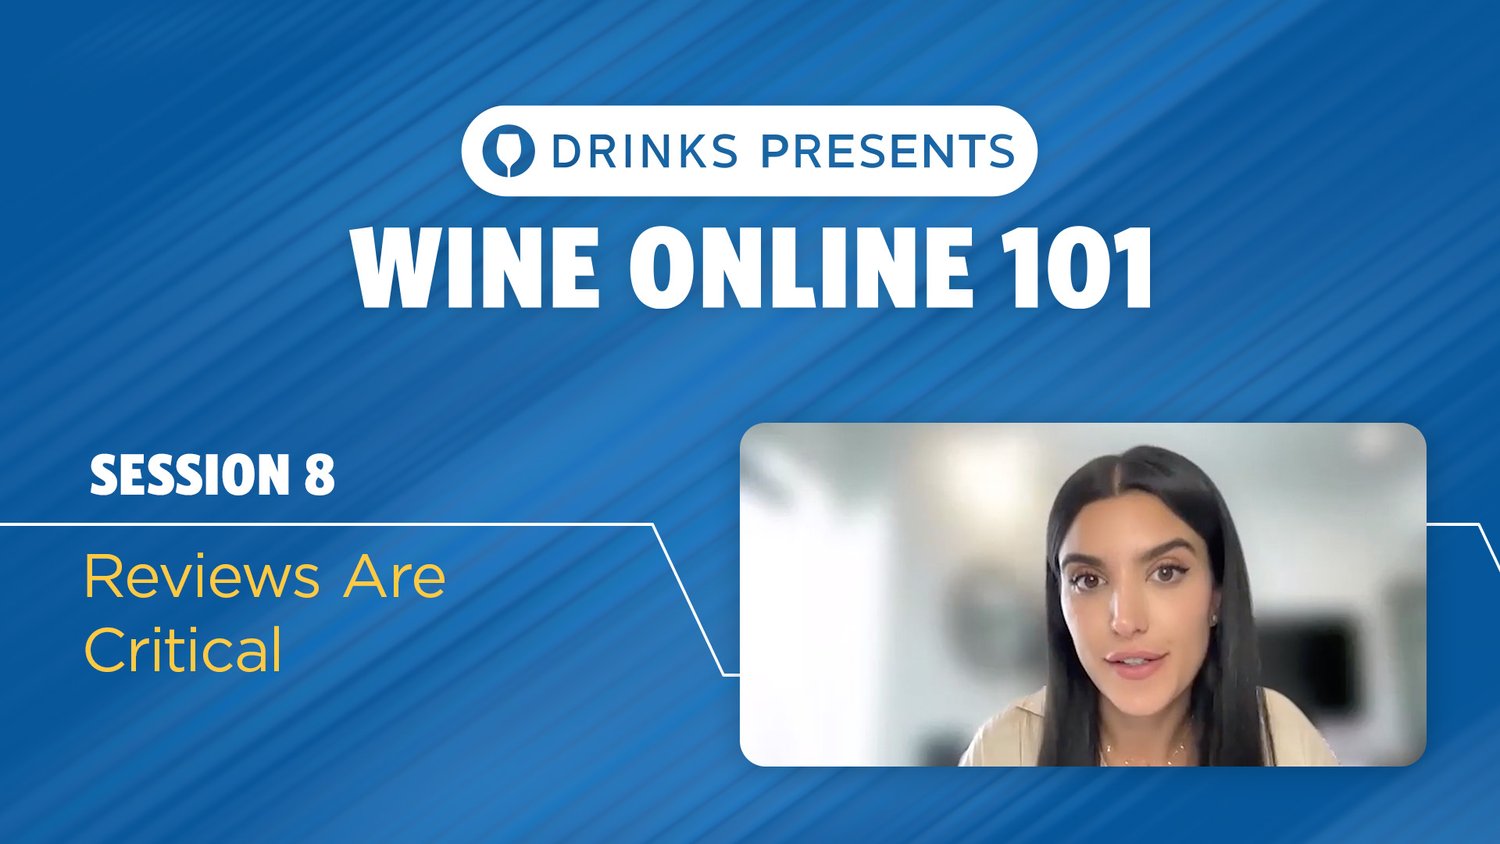 drinks-wine-online-101-title-slide-session-08